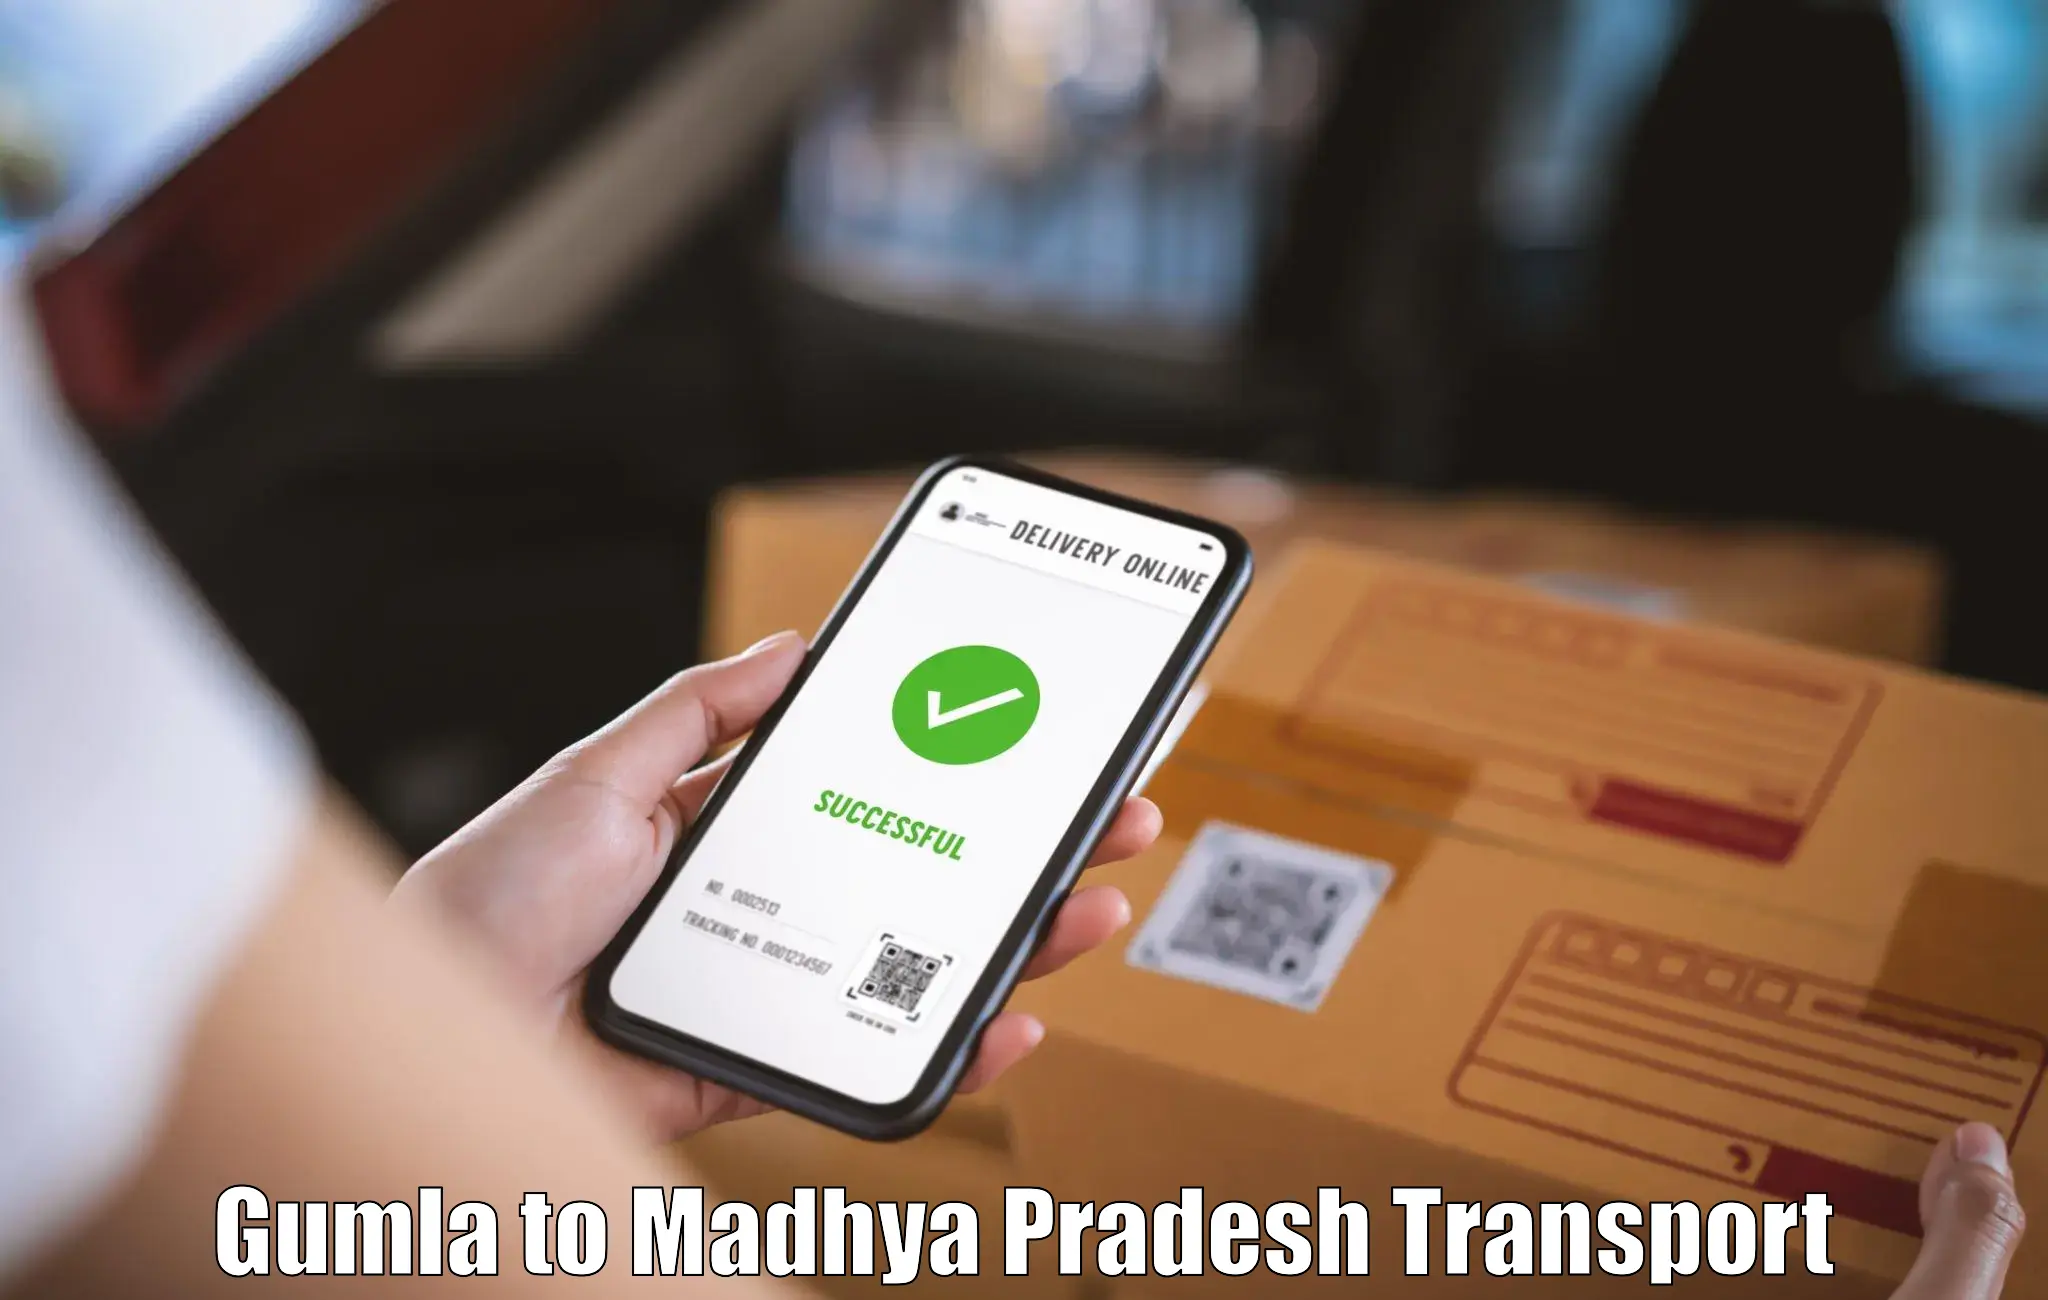 Online transport service Gumla to Chand Chaurai